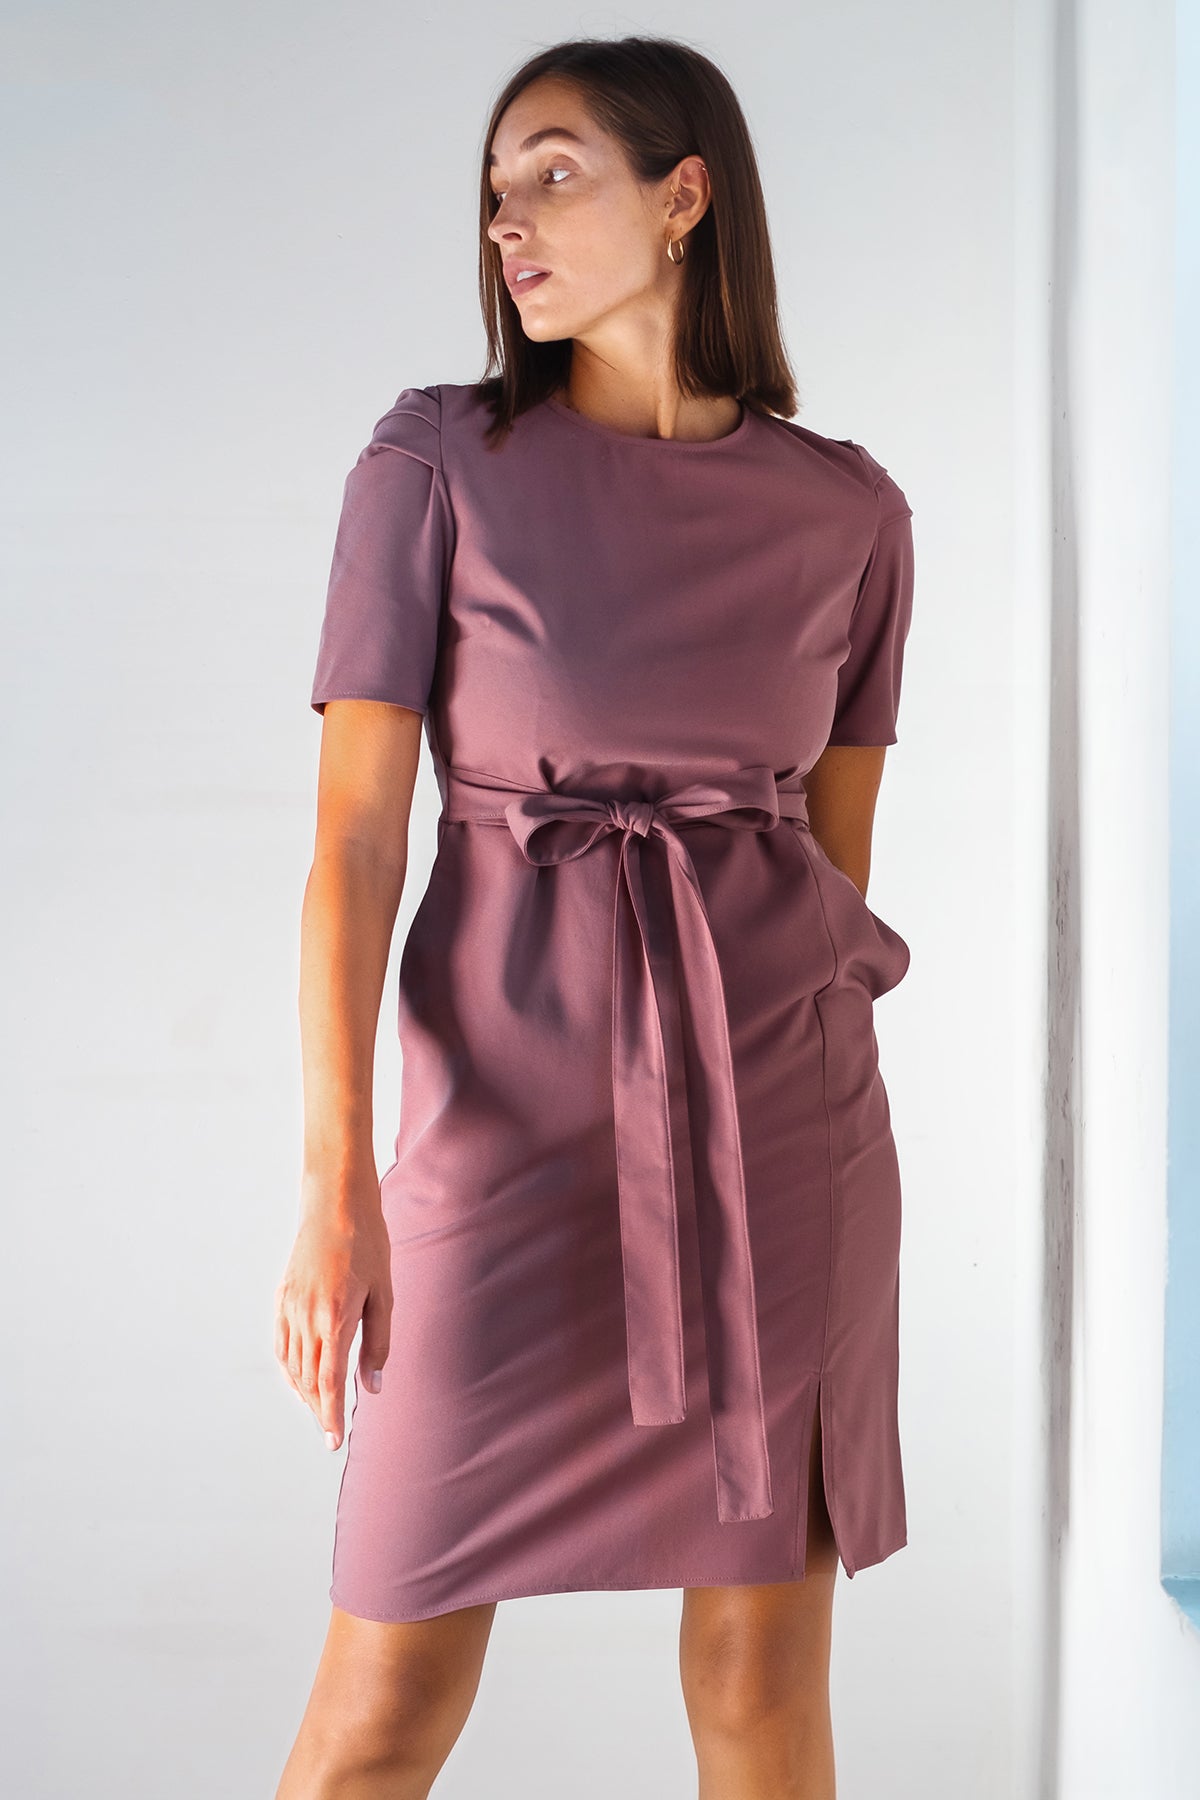 Andriana Womens Short Sleeve Office Dress